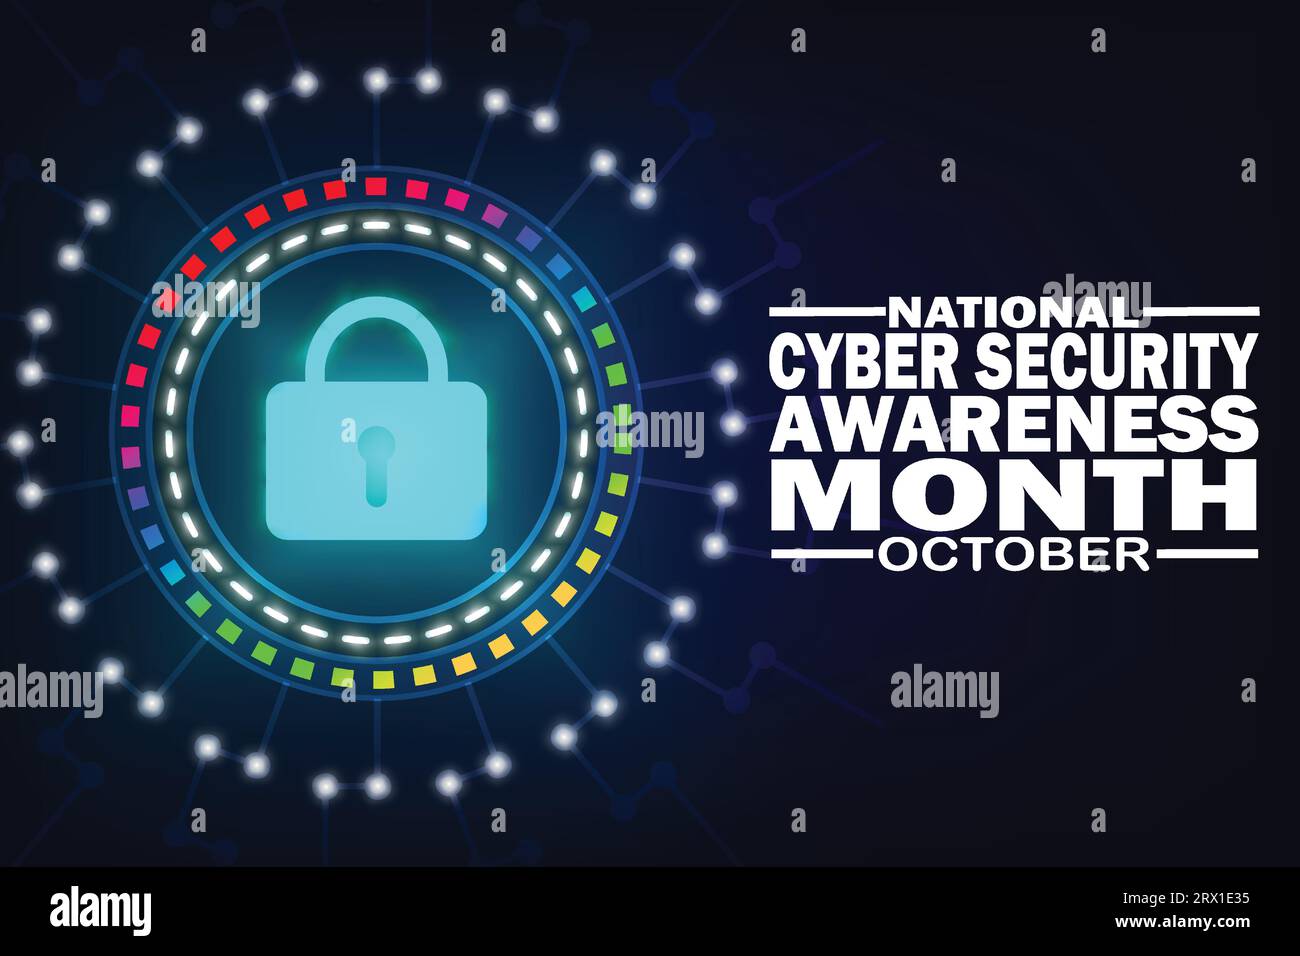 National Cyber Security Awareness Month Oktober. Es wird jedes Jahr im Oktober gefeiert. Vorlage für Hintergrund, Banner, Karte, Poster mit Text Stock Vektor